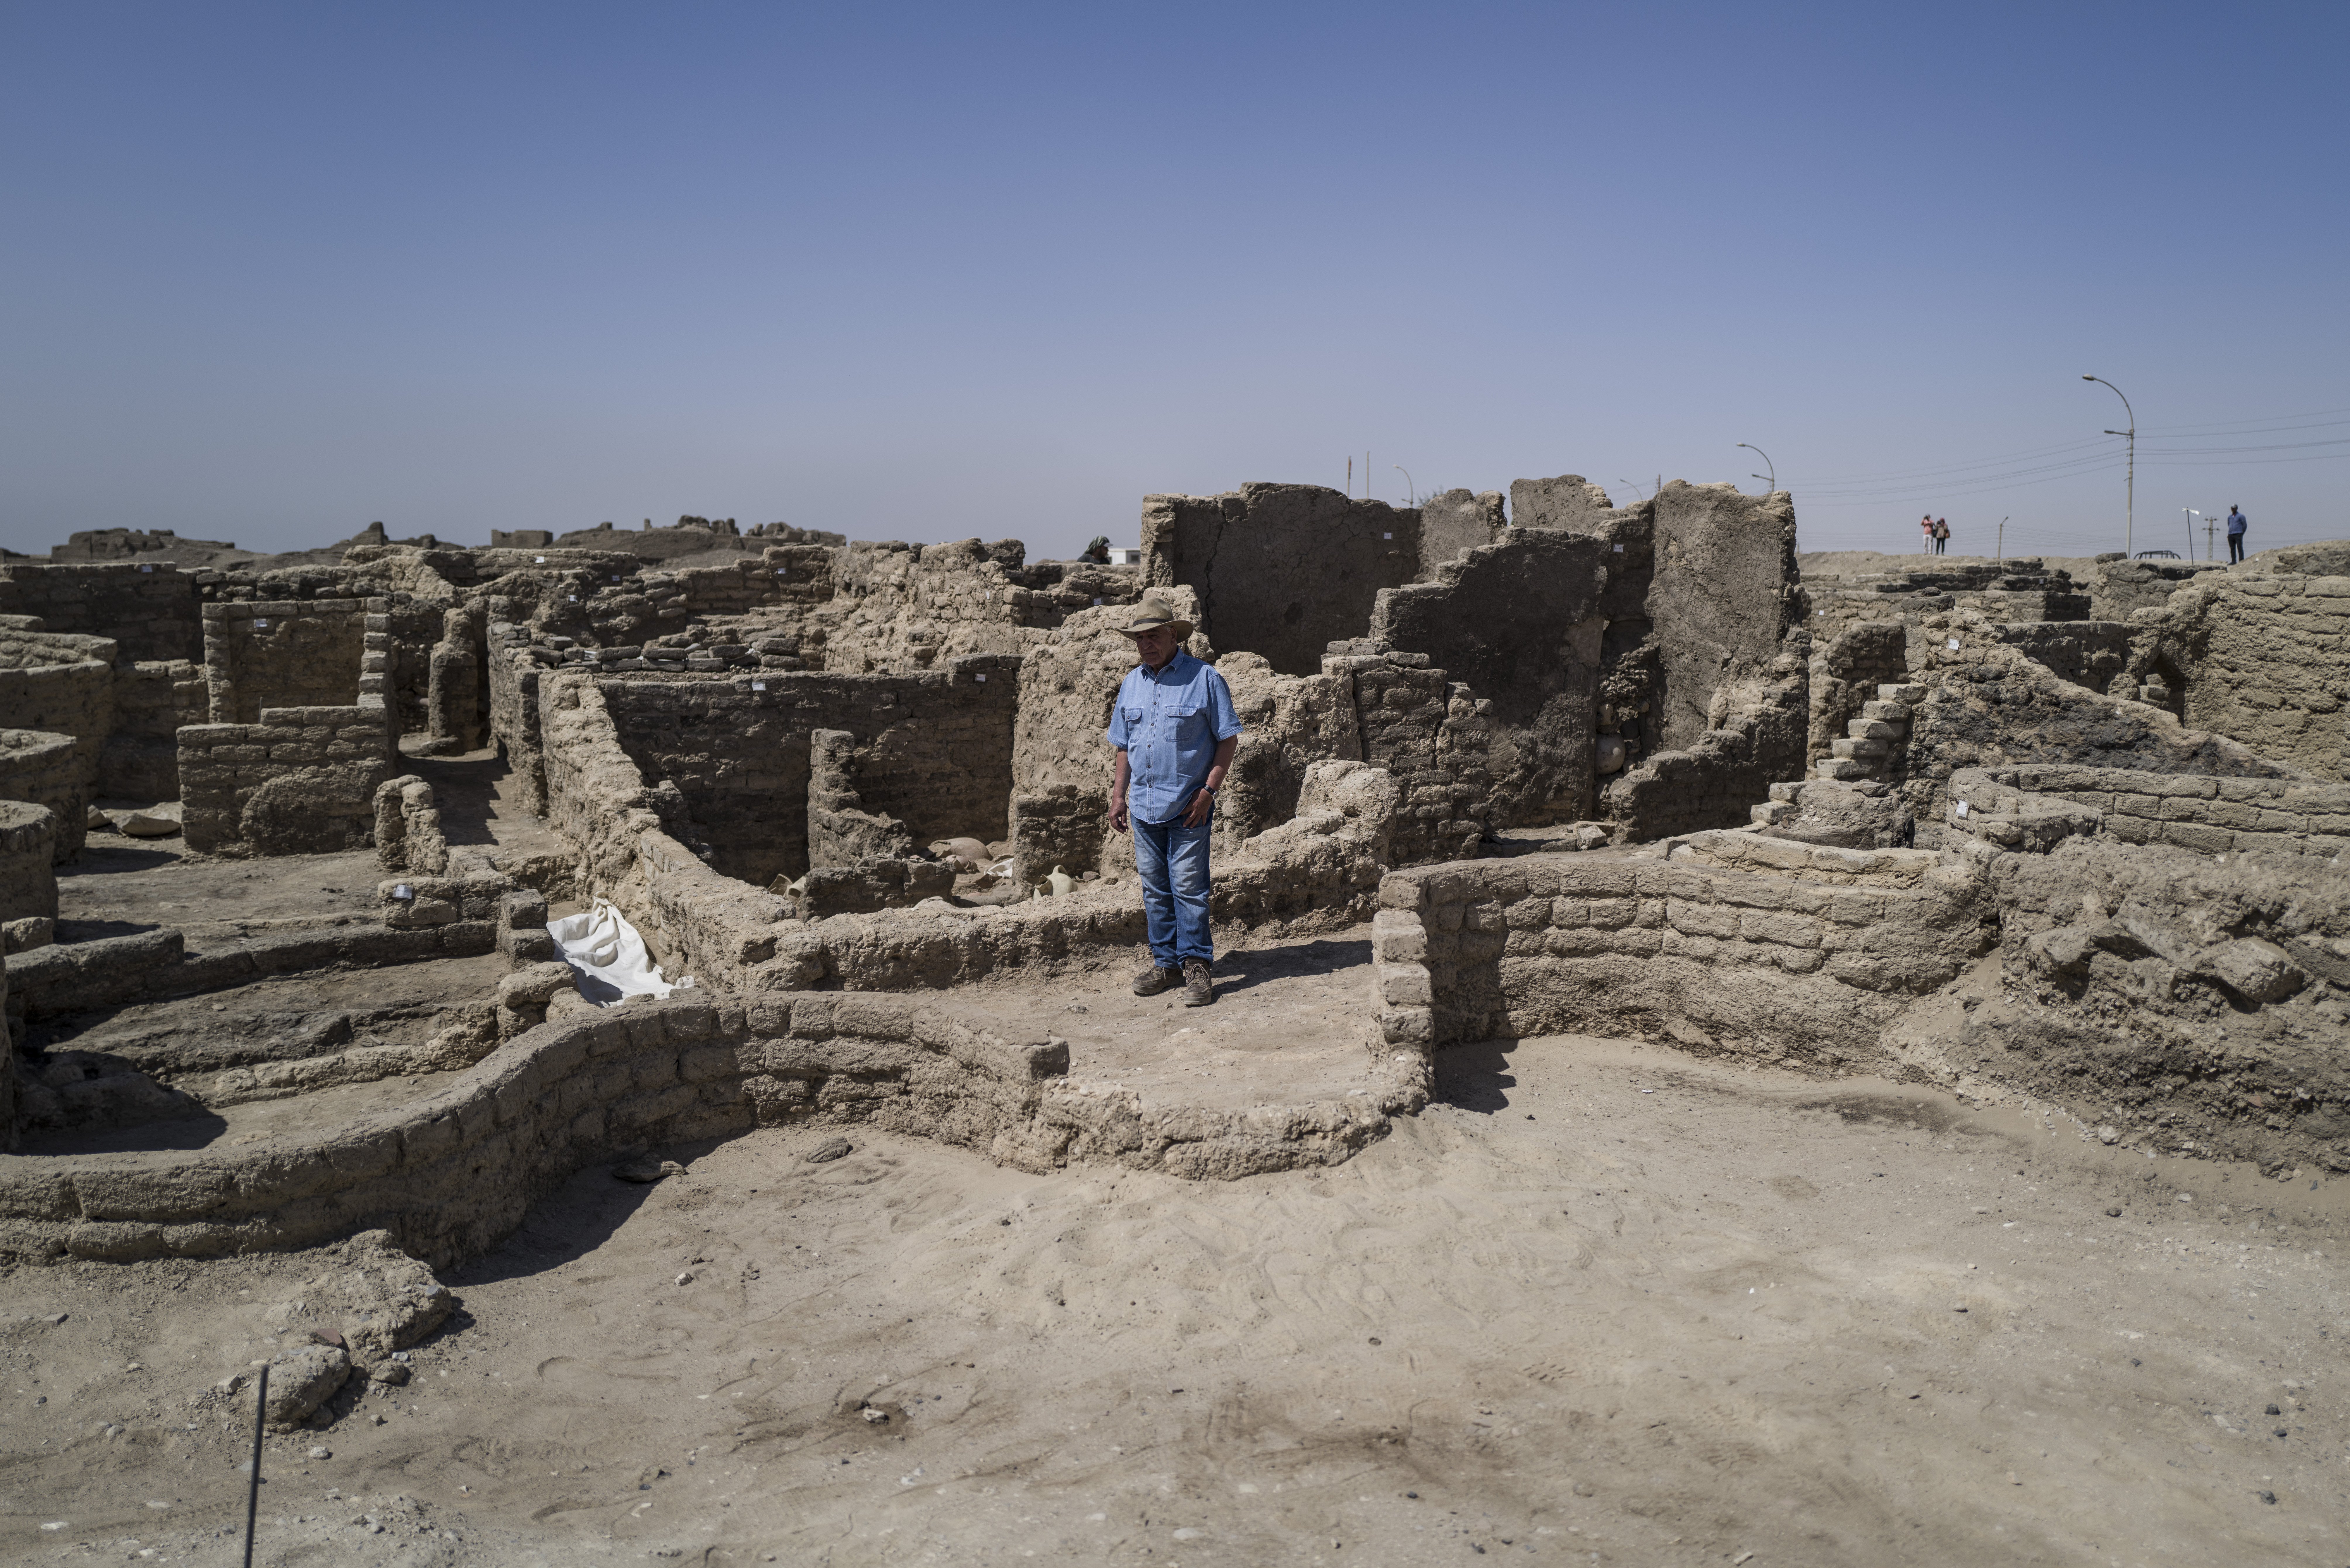 Zahi Hawass frente a las ruinas de la ciudad perdida que descubrió en Luxor, Egipto en abril de 2021. | Foto: Getty Images